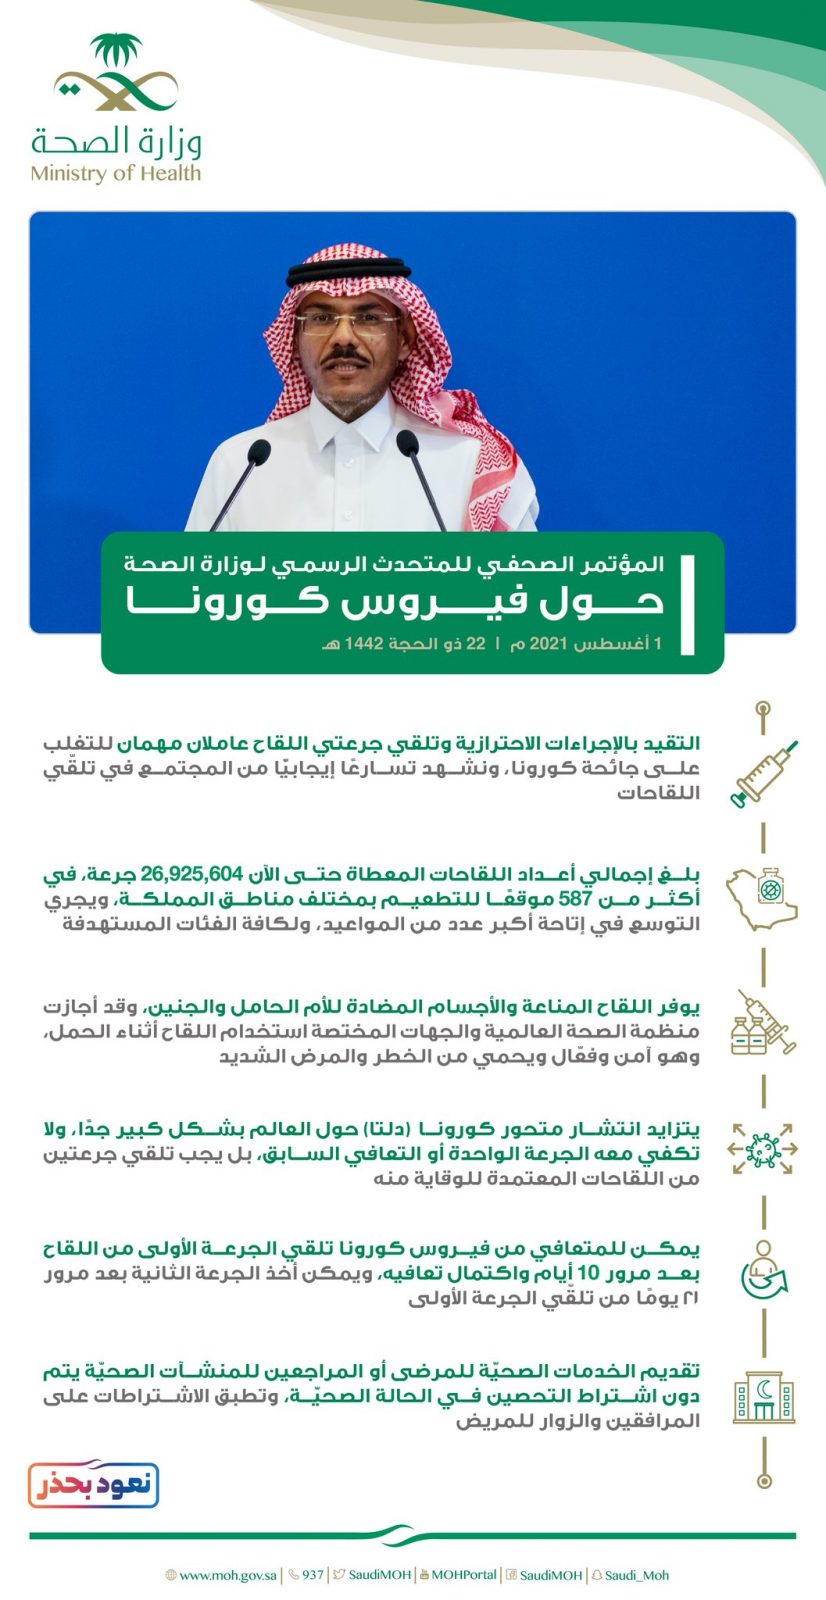 السعودية في اللقاحات المعتمدة 6 متطلبات